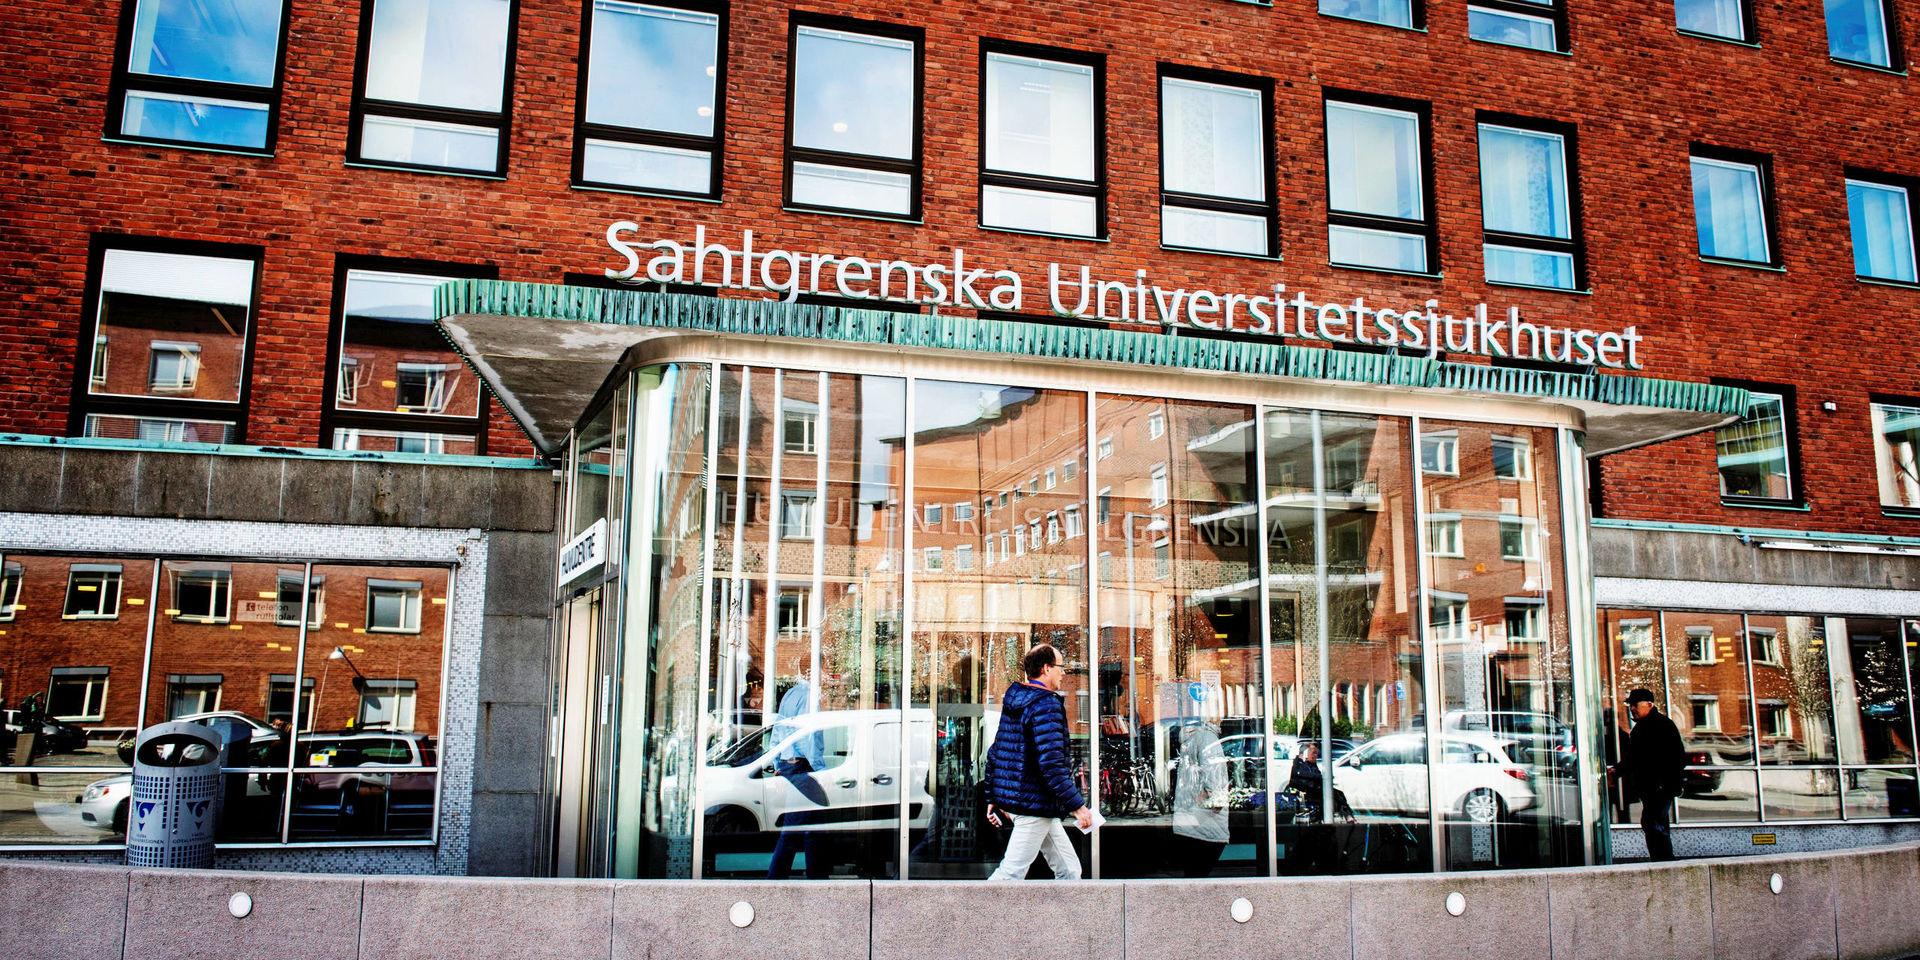 Väntetiderna på akuten och för vissa cancerbehandlingar, samt dålig måluppfyllelse för vårdgarantin, drar ner betyget för Sahlgrenska universitetssjukhuset.